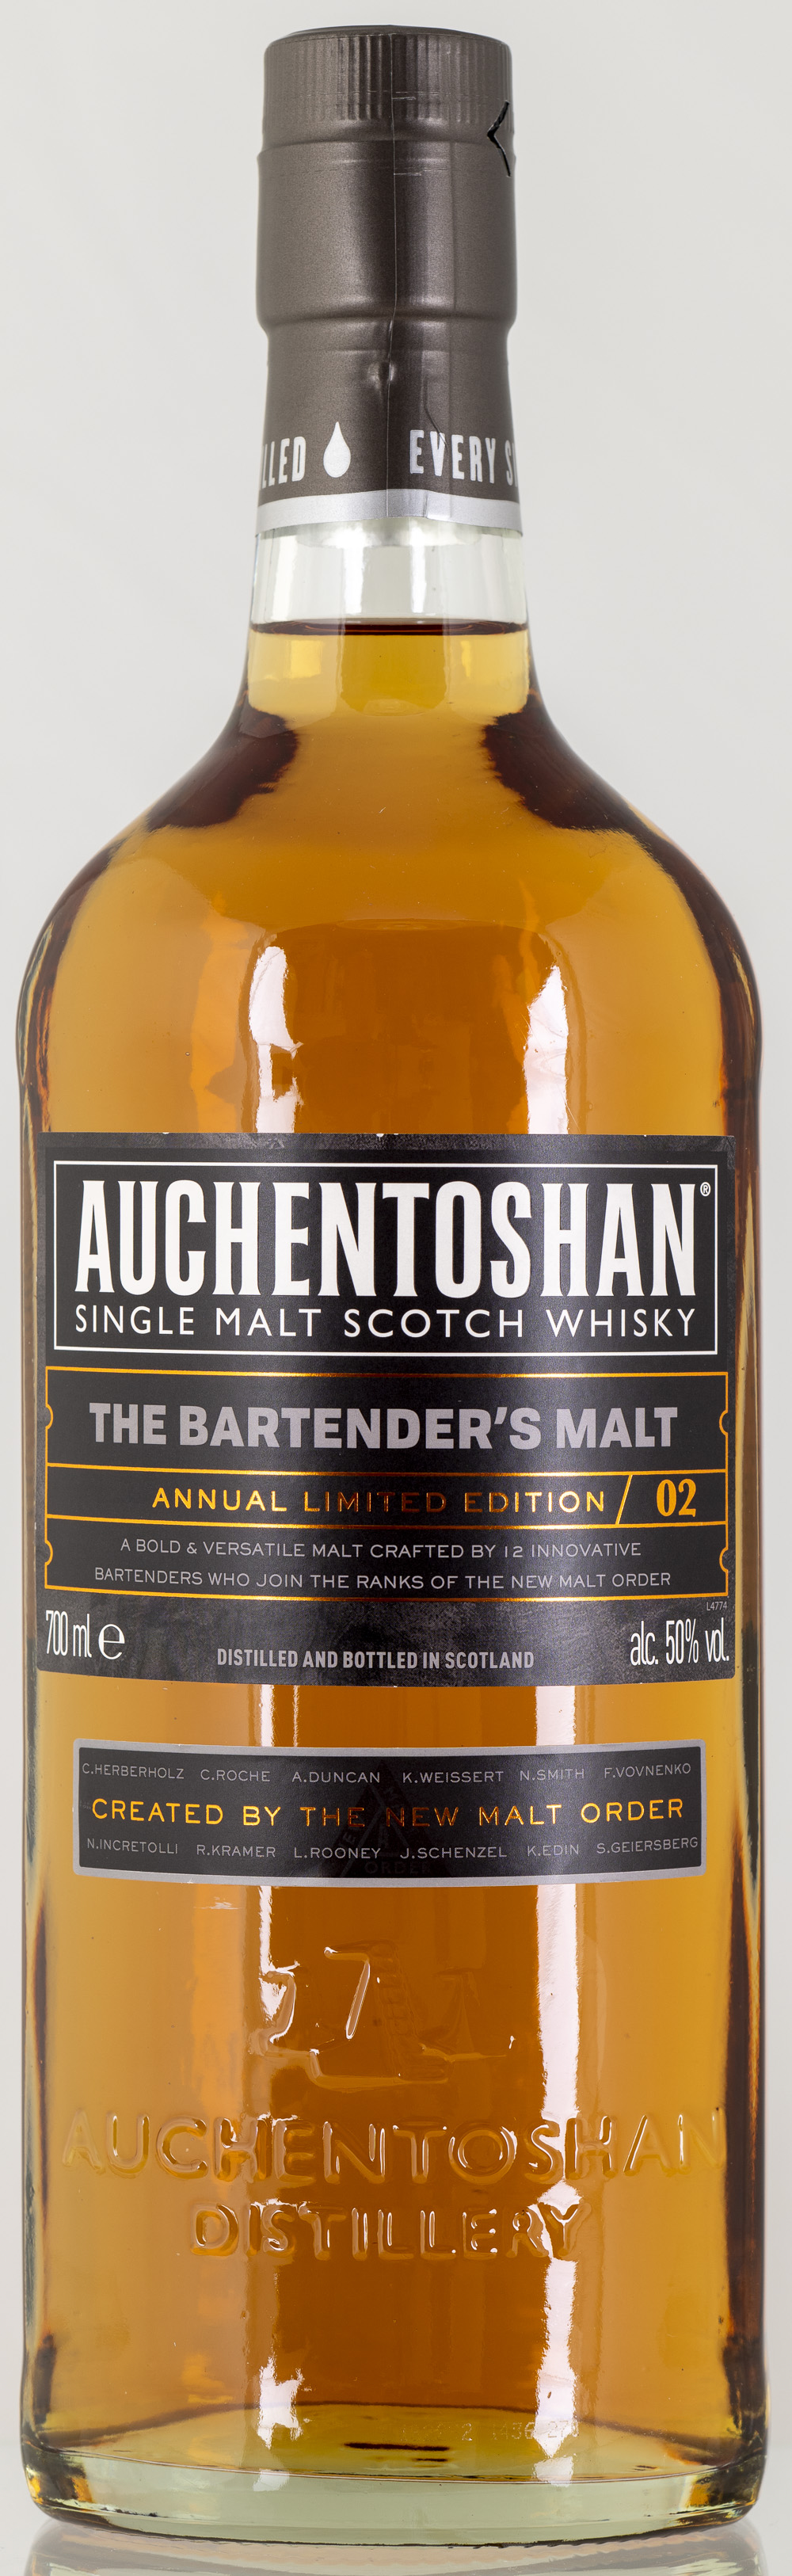 Billede: PHC_2190 - Auchentoshan The Bartenders Malt Annual Limited Edition 02 - bottle front.jpg